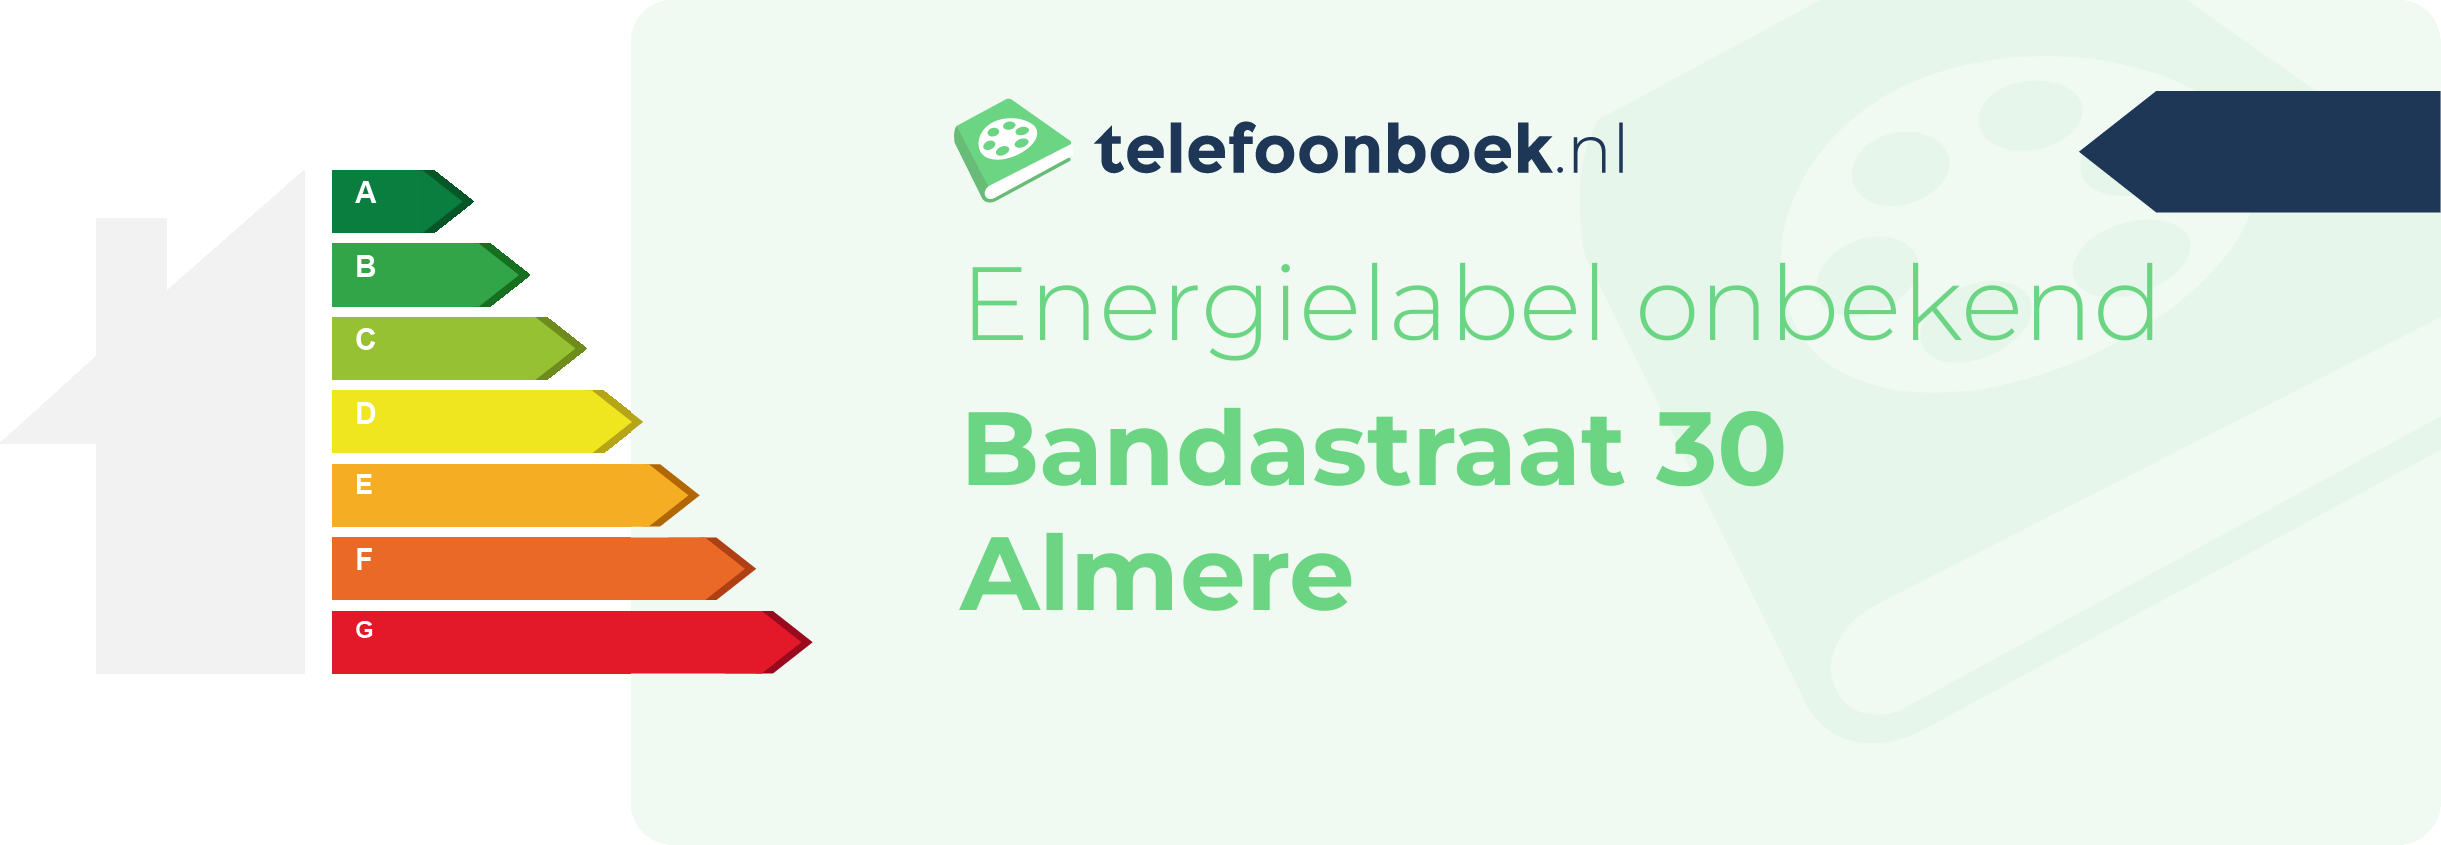 Energielabel Bandastraat 30 Almere